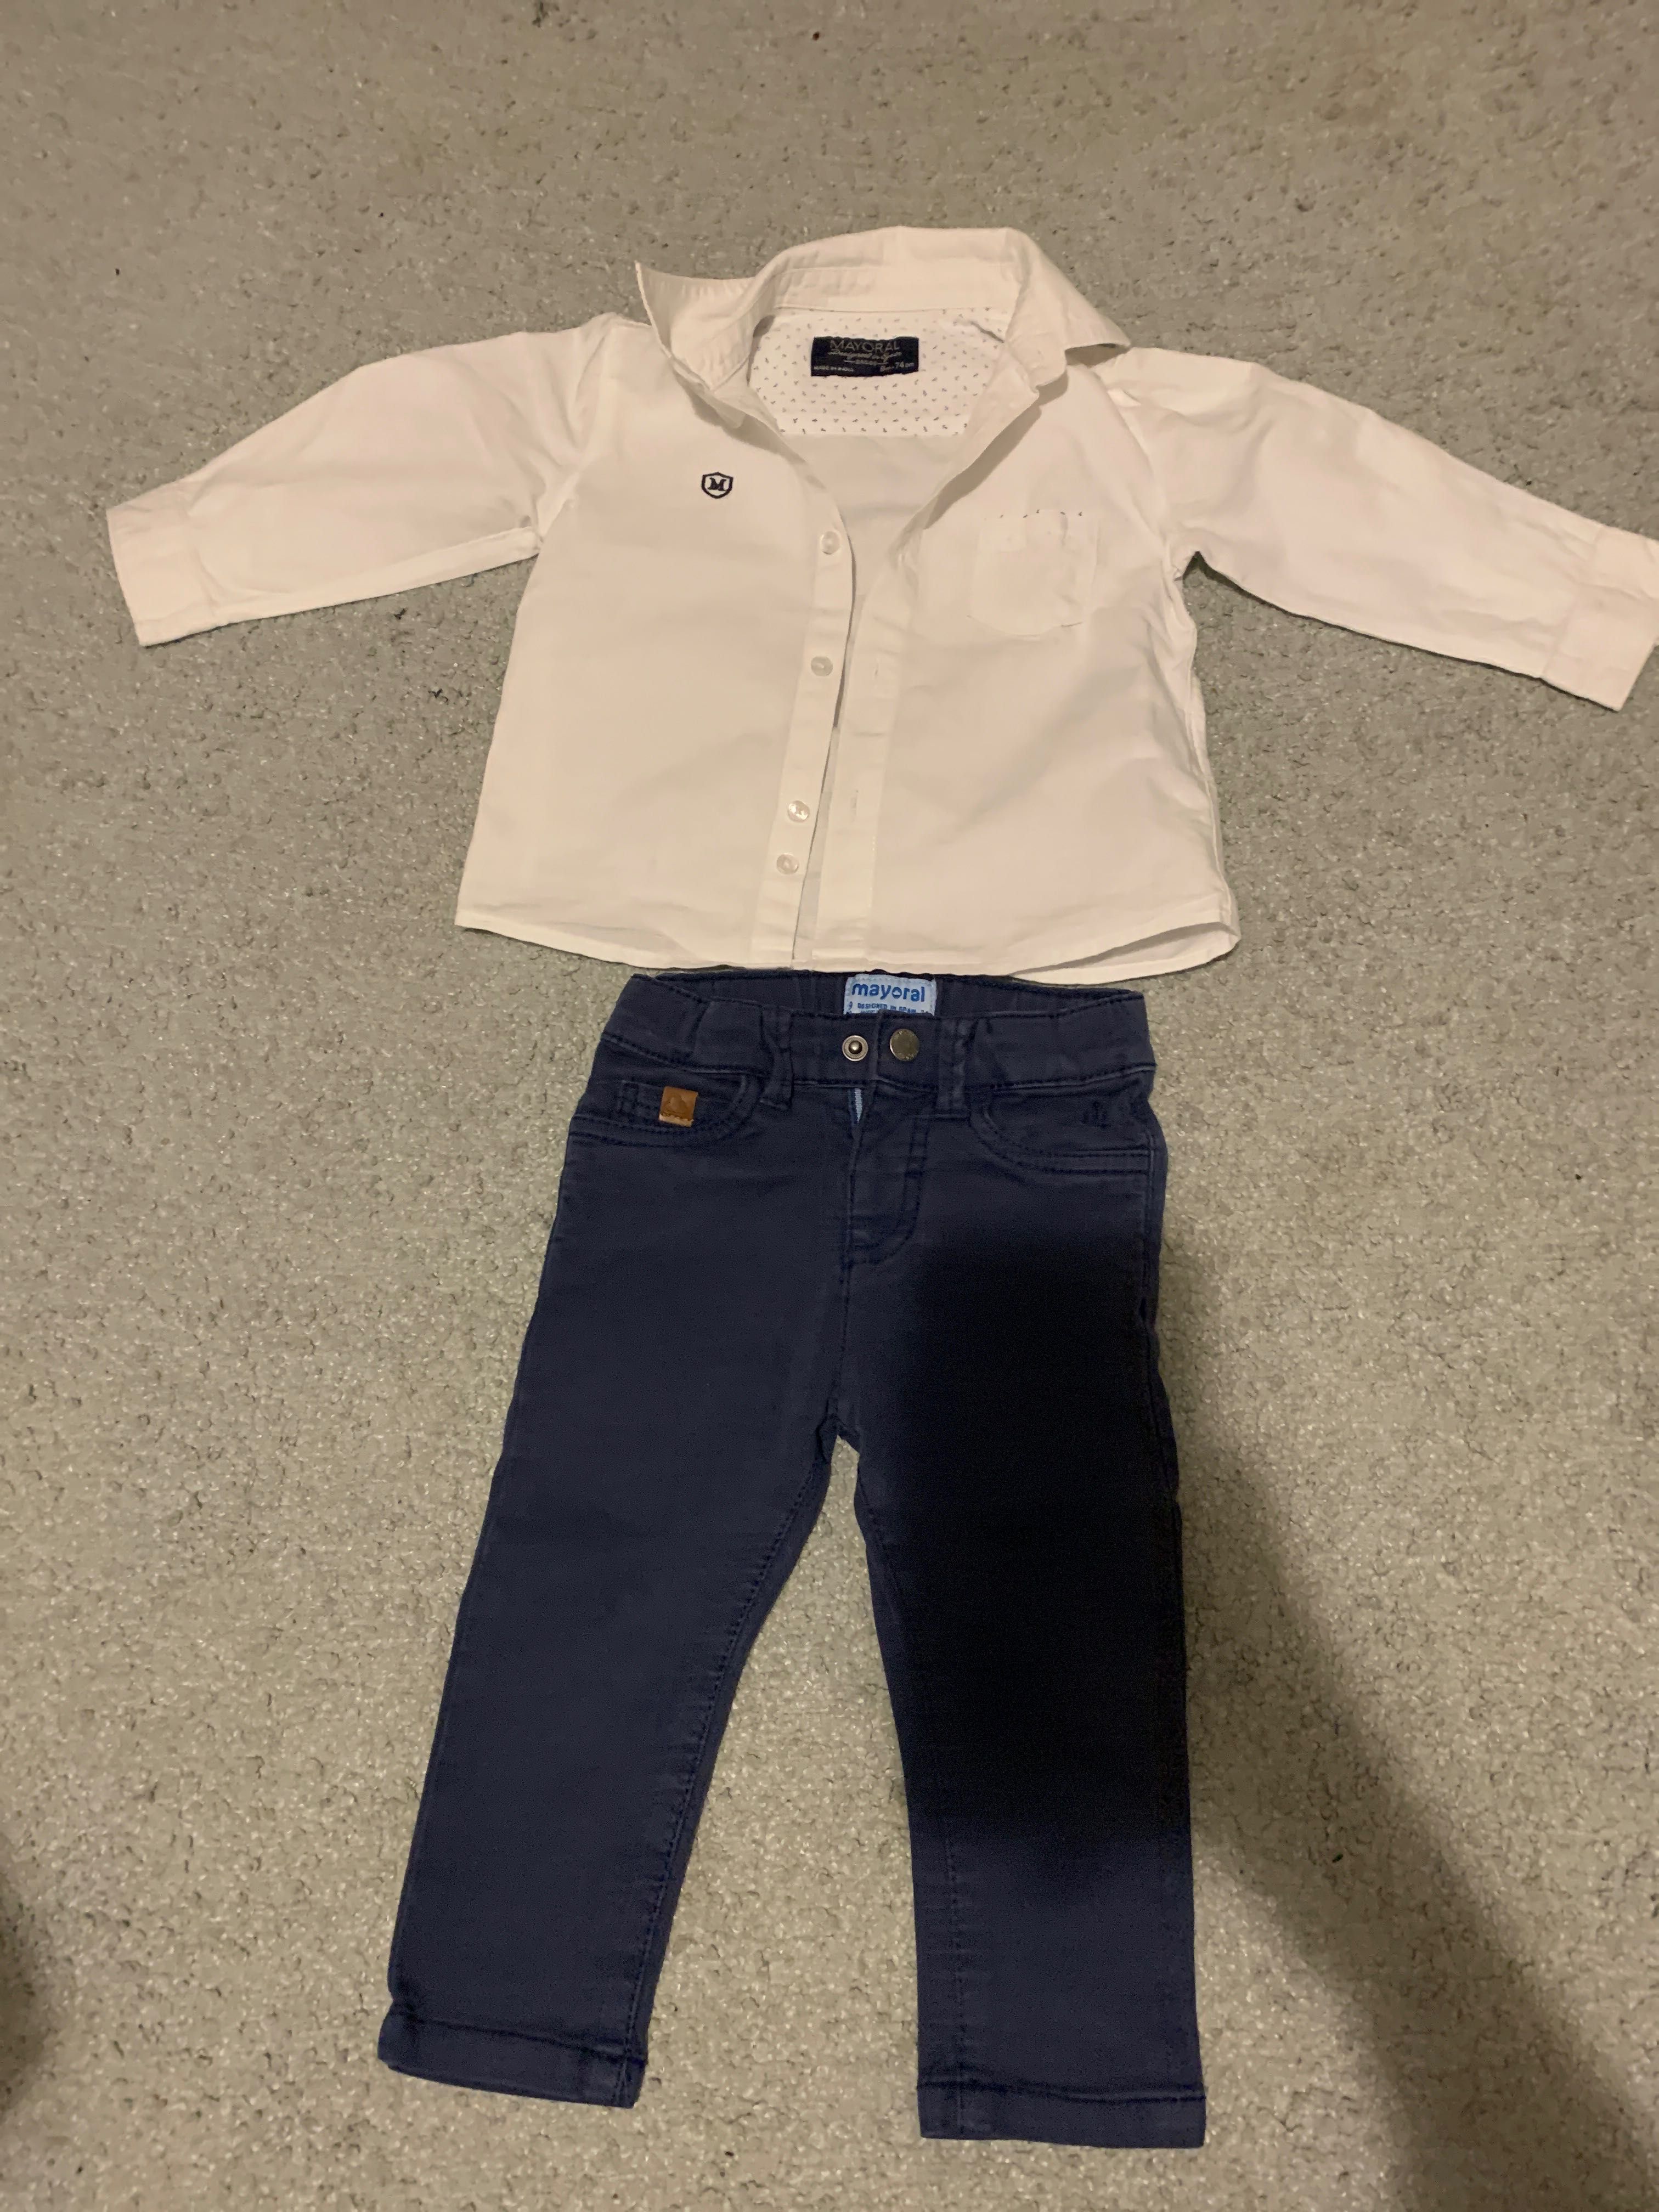 Koszula i spodnie dla chłopca Mayoral 9 mięs 74 cm